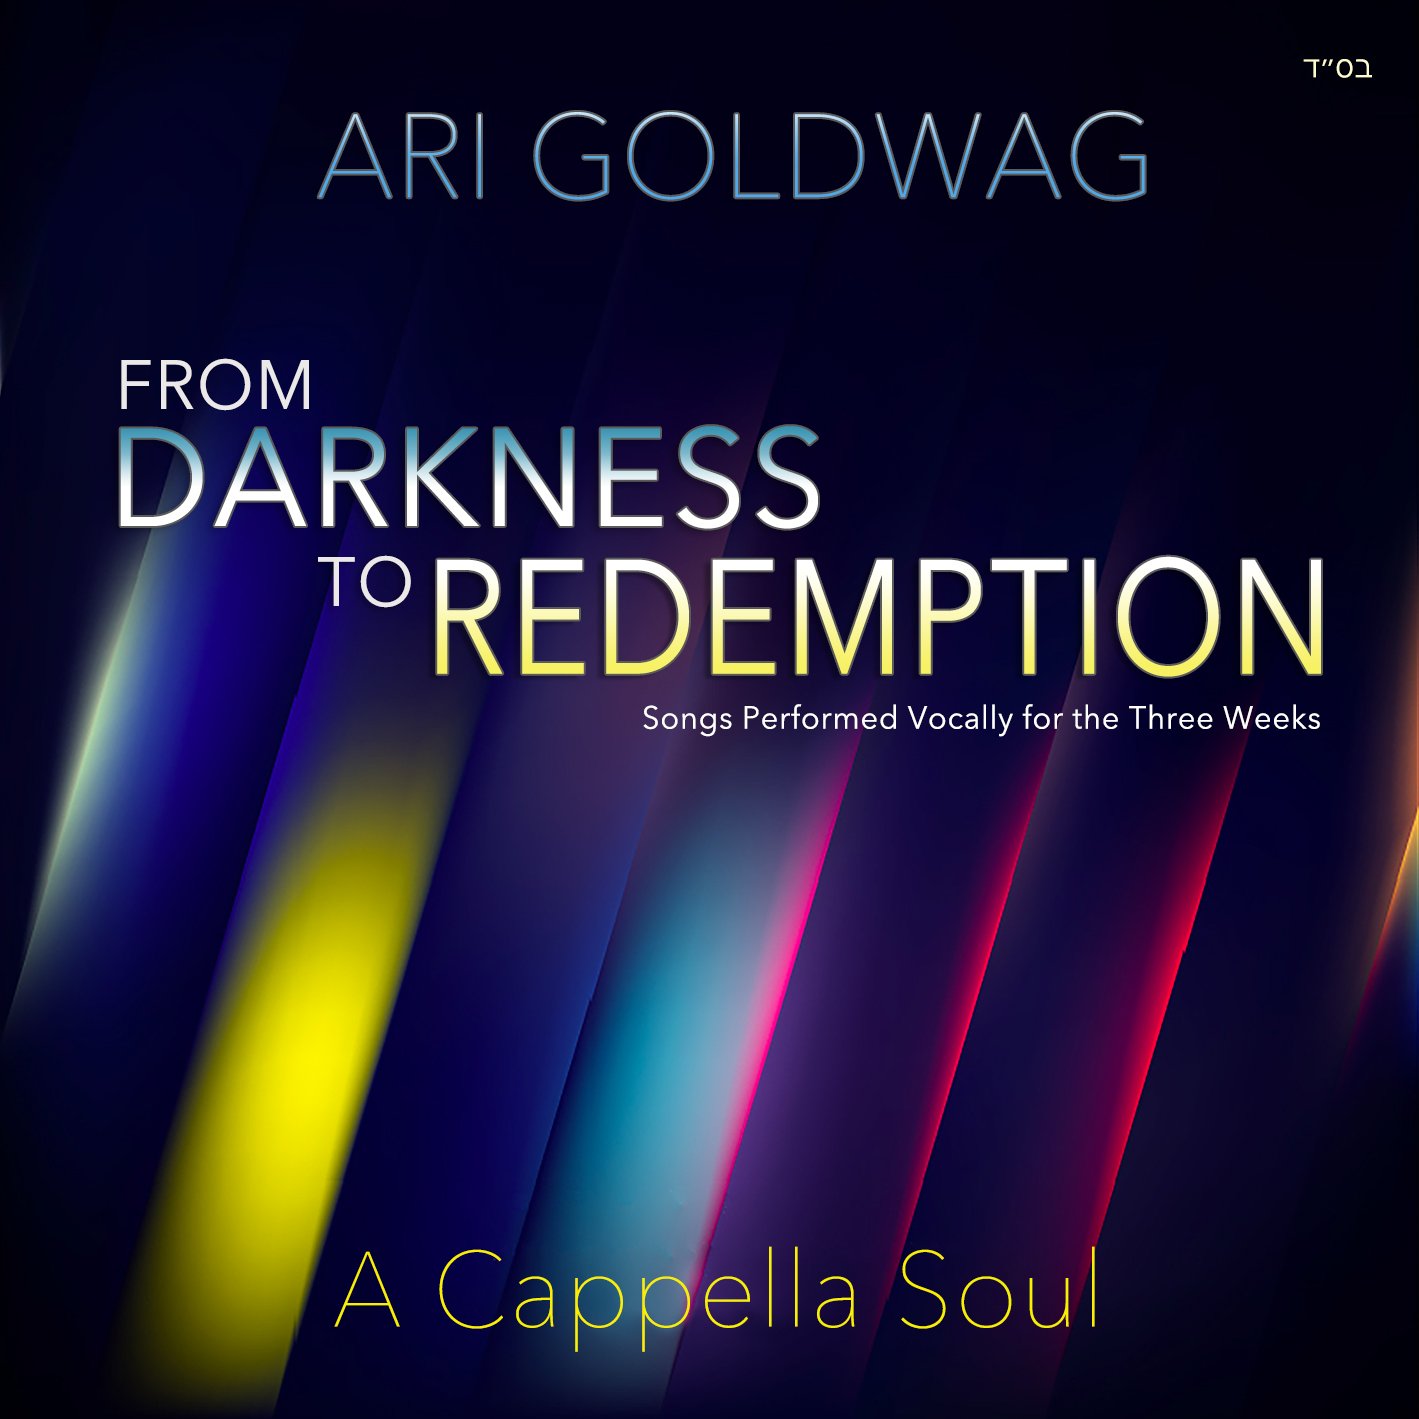 ארי גולדוואג -החושך לגאולה - ווקאלי - אלבום חדש - Ari Goldwag - A Cappella Darkness to Redemption